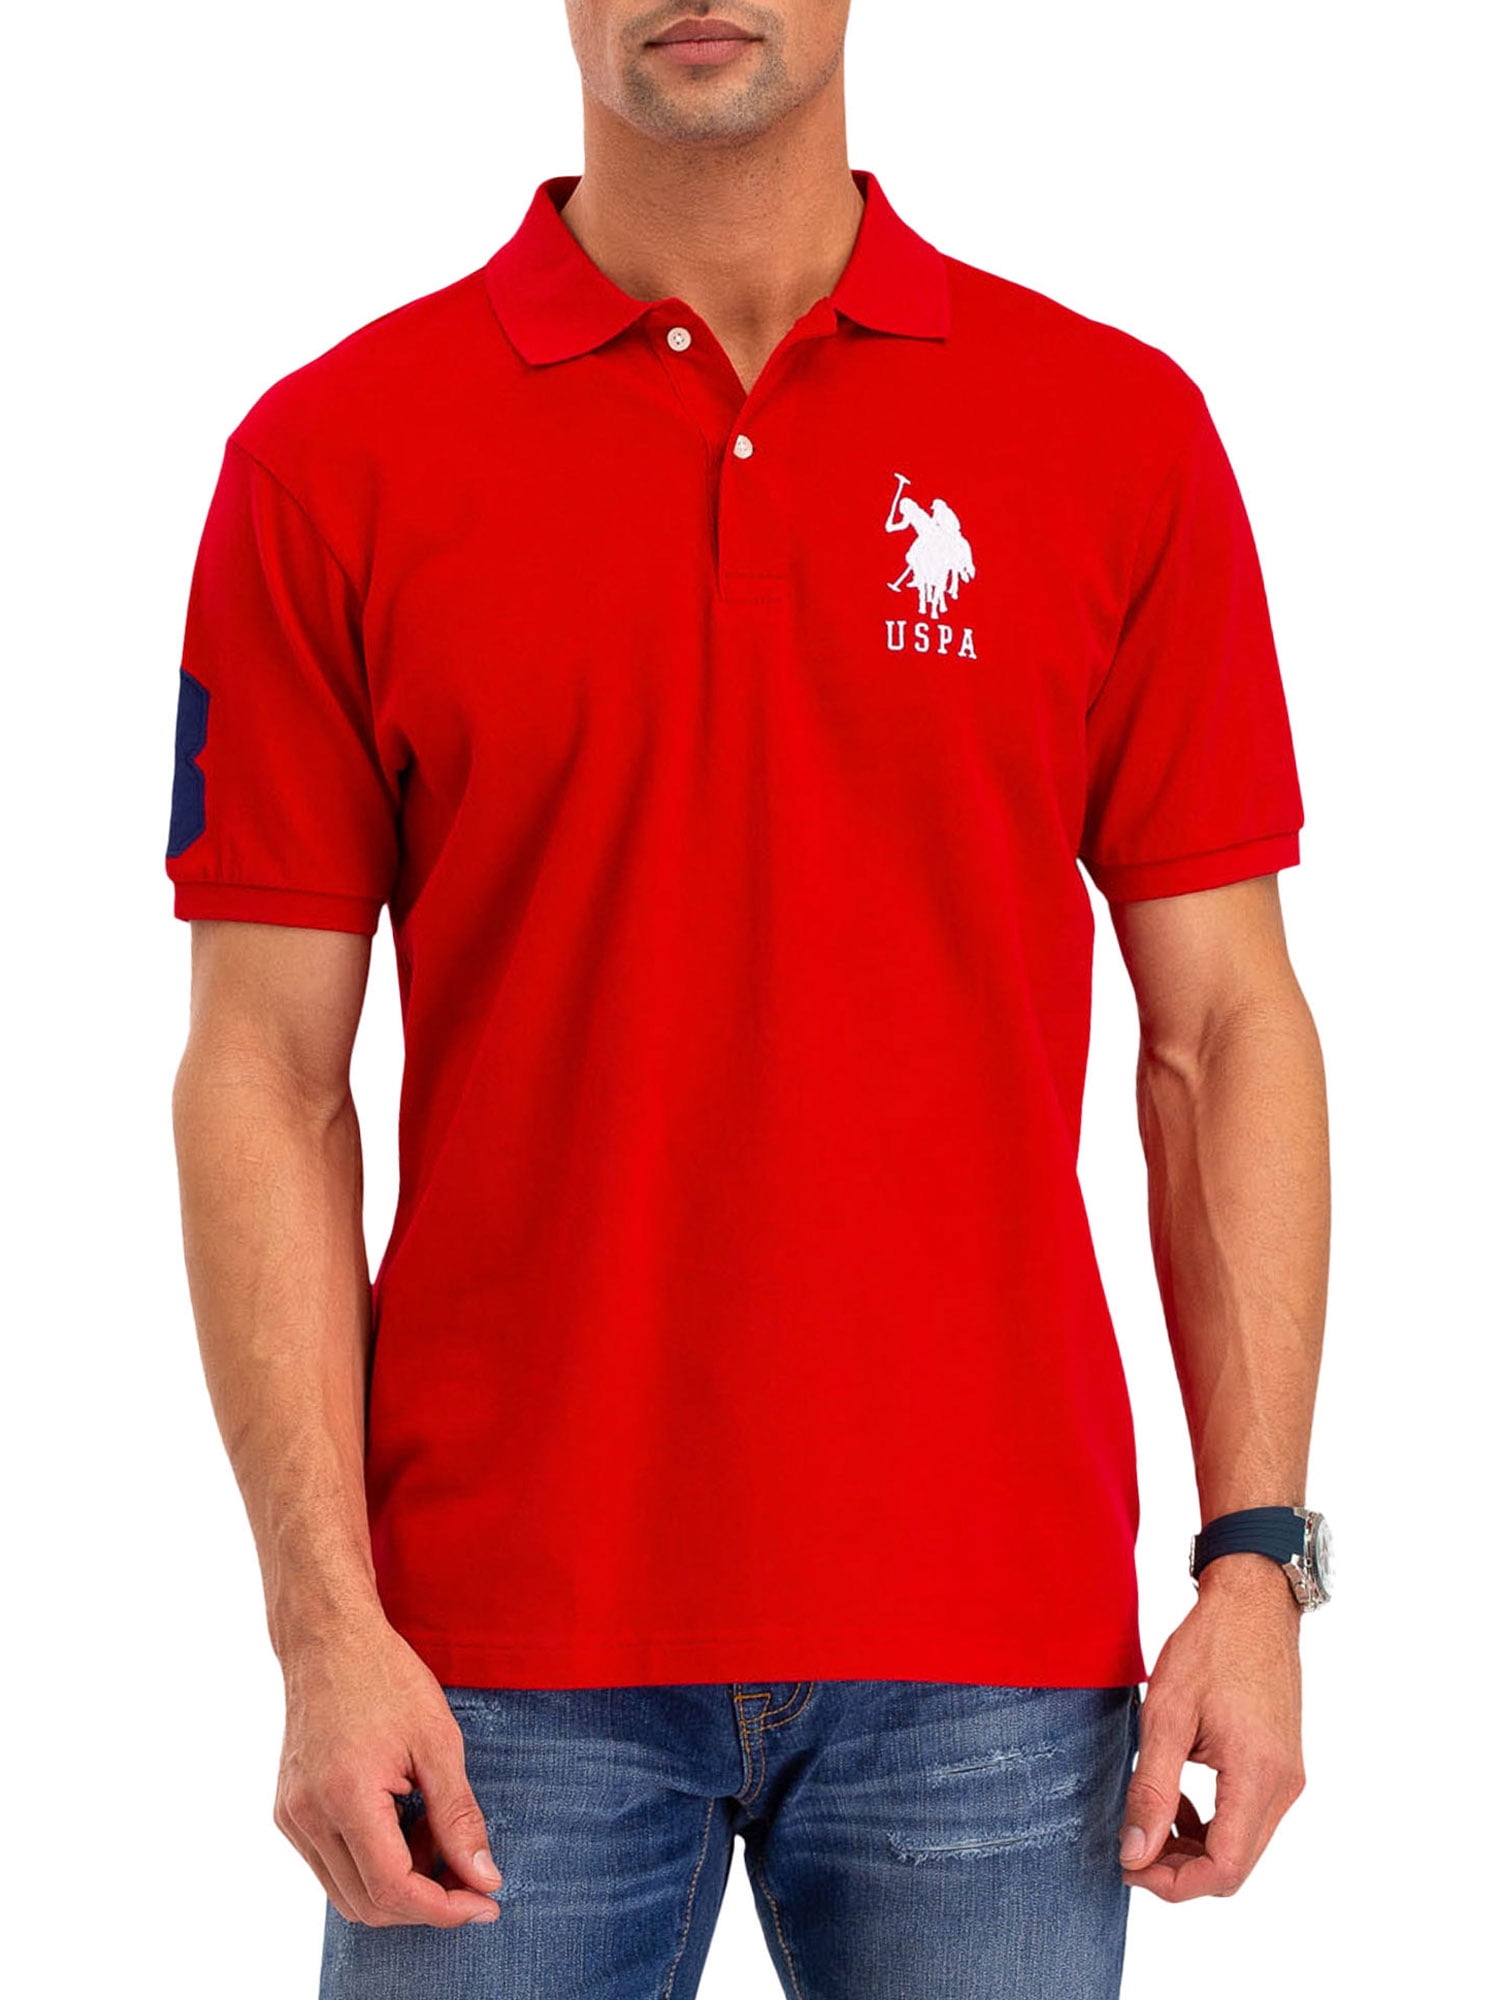 U.S. Polo Assn. Men's Solid Pique Polo Shirt - Walmart.com